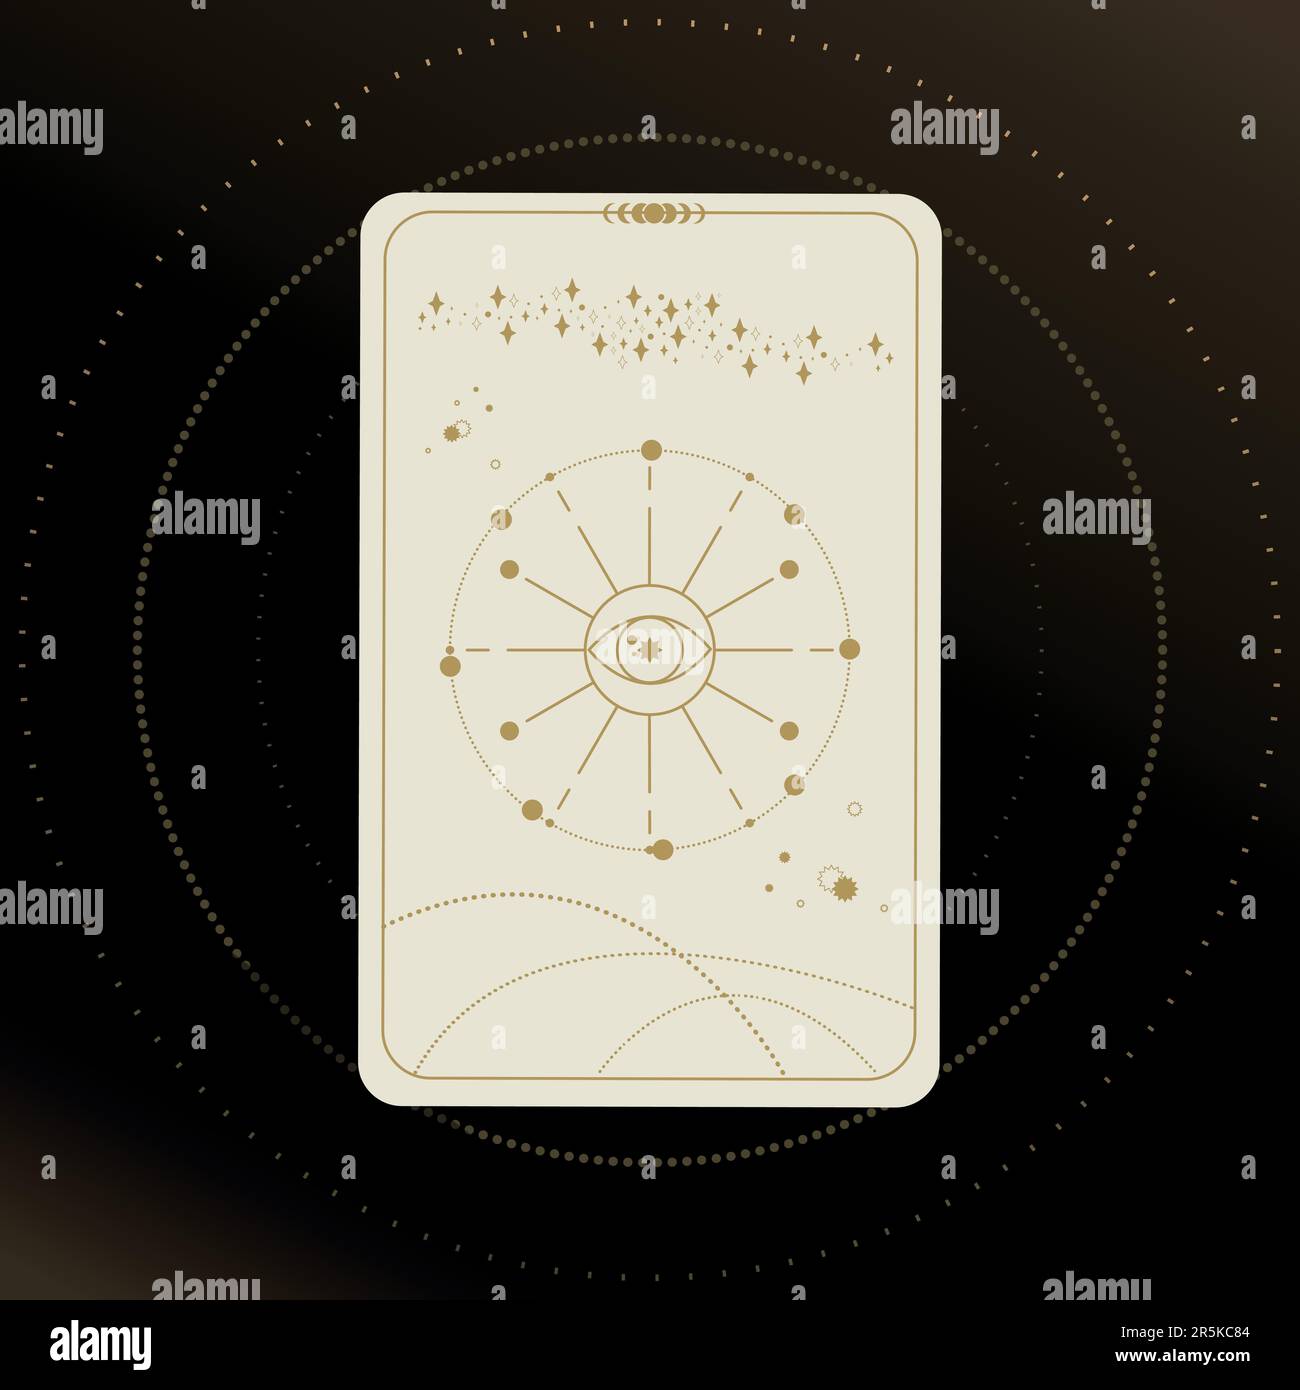 Goldene und weiße Tarotkarte mit einem magischen Auge auf schwarzem Hintergrund mit Sternen. Tarotsymbolik. Geheimnisvoll, Astrologie, esoterisch Stock Vektor